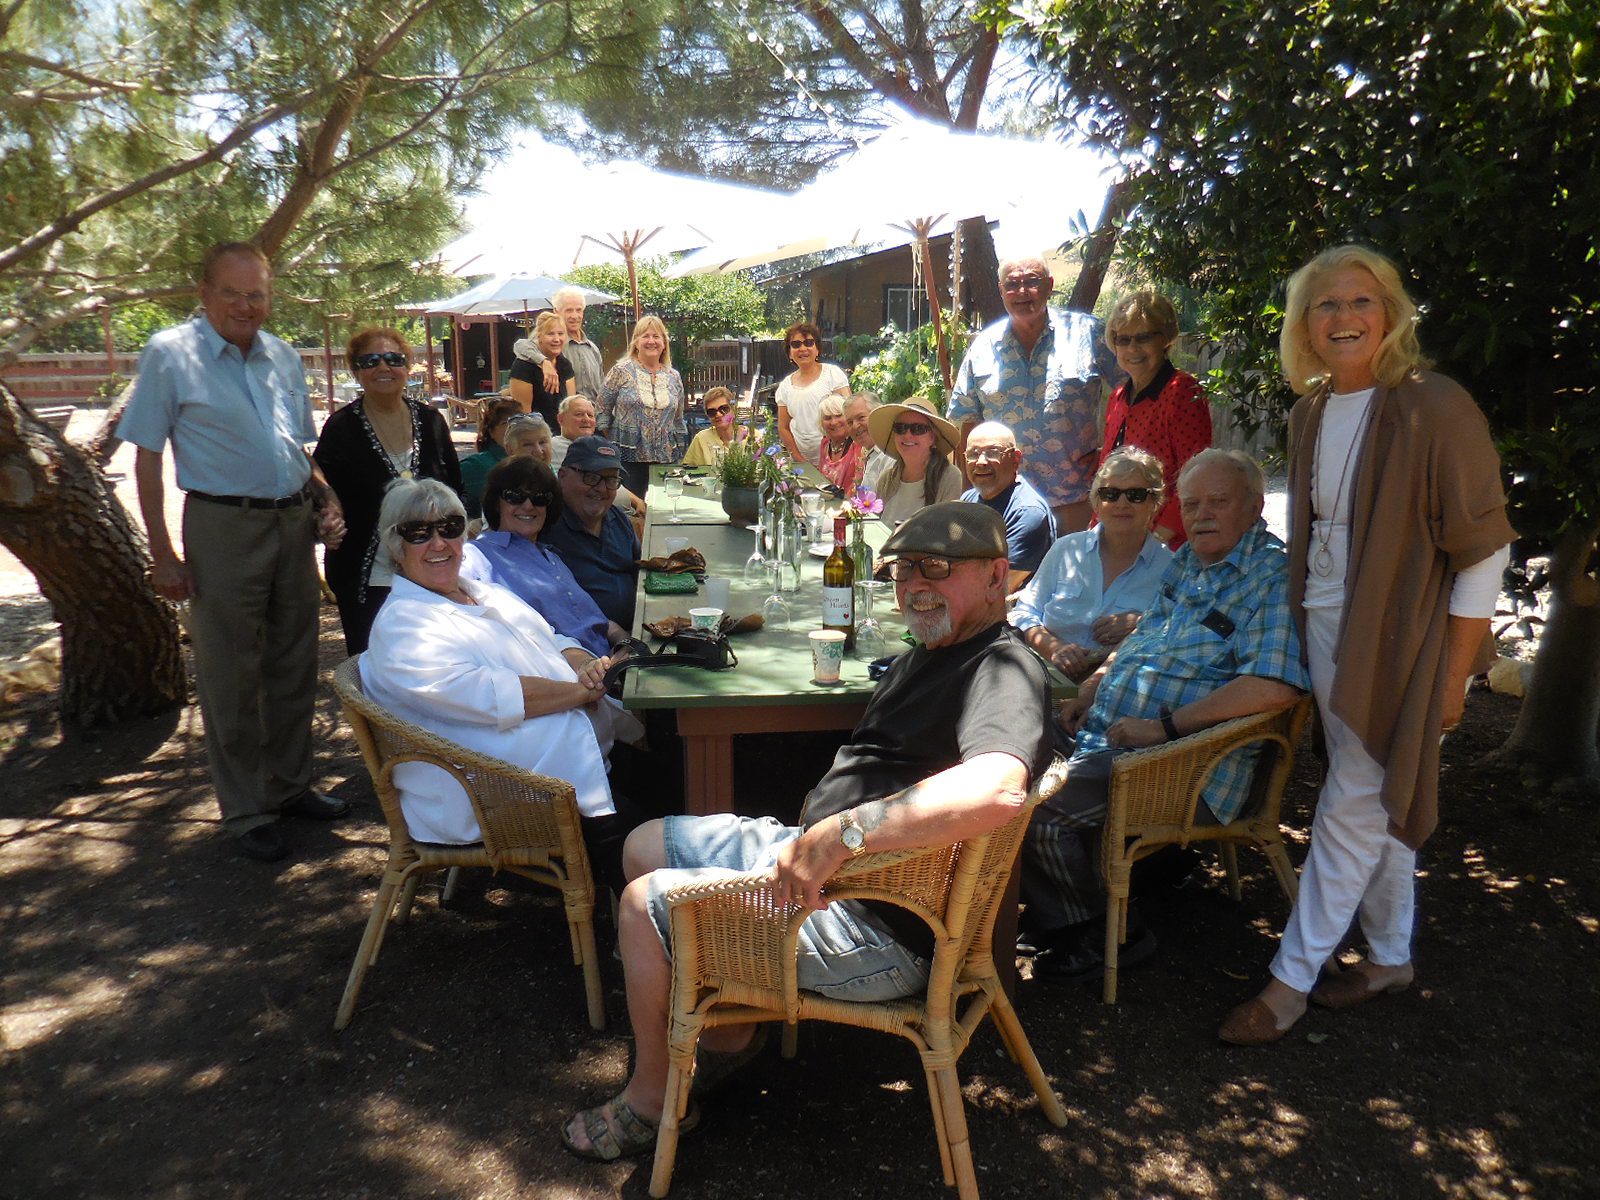 Buellton Senior Center enjoys lunch in garden setting